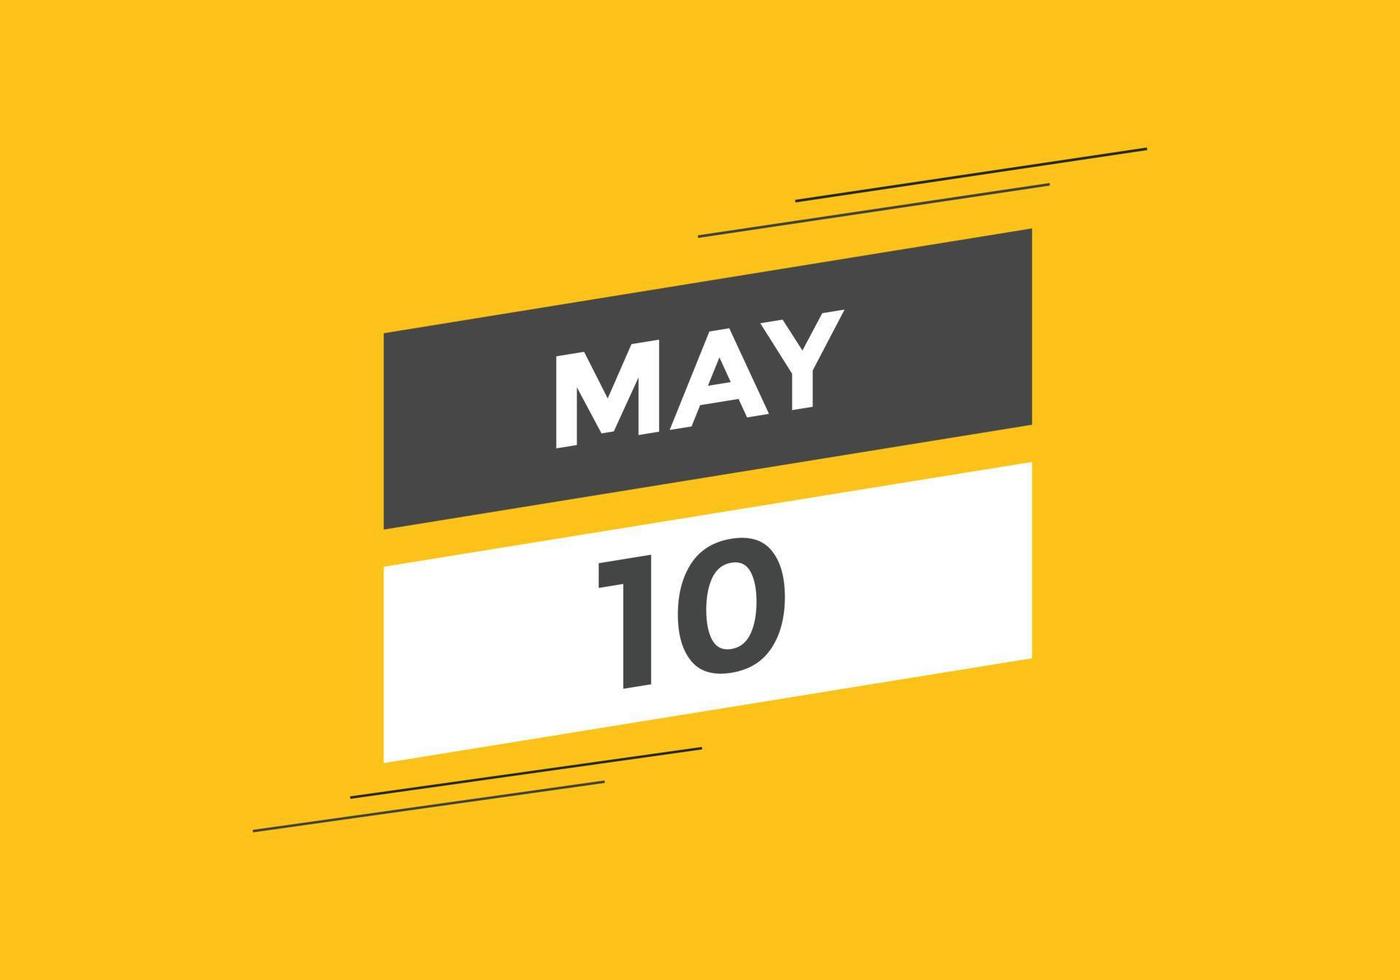 Maj 10 kalender påminnelse. 10:e Maj dagligen kalender ikon mall. kalender 10:e Maj ikon design mall. vektor illustration